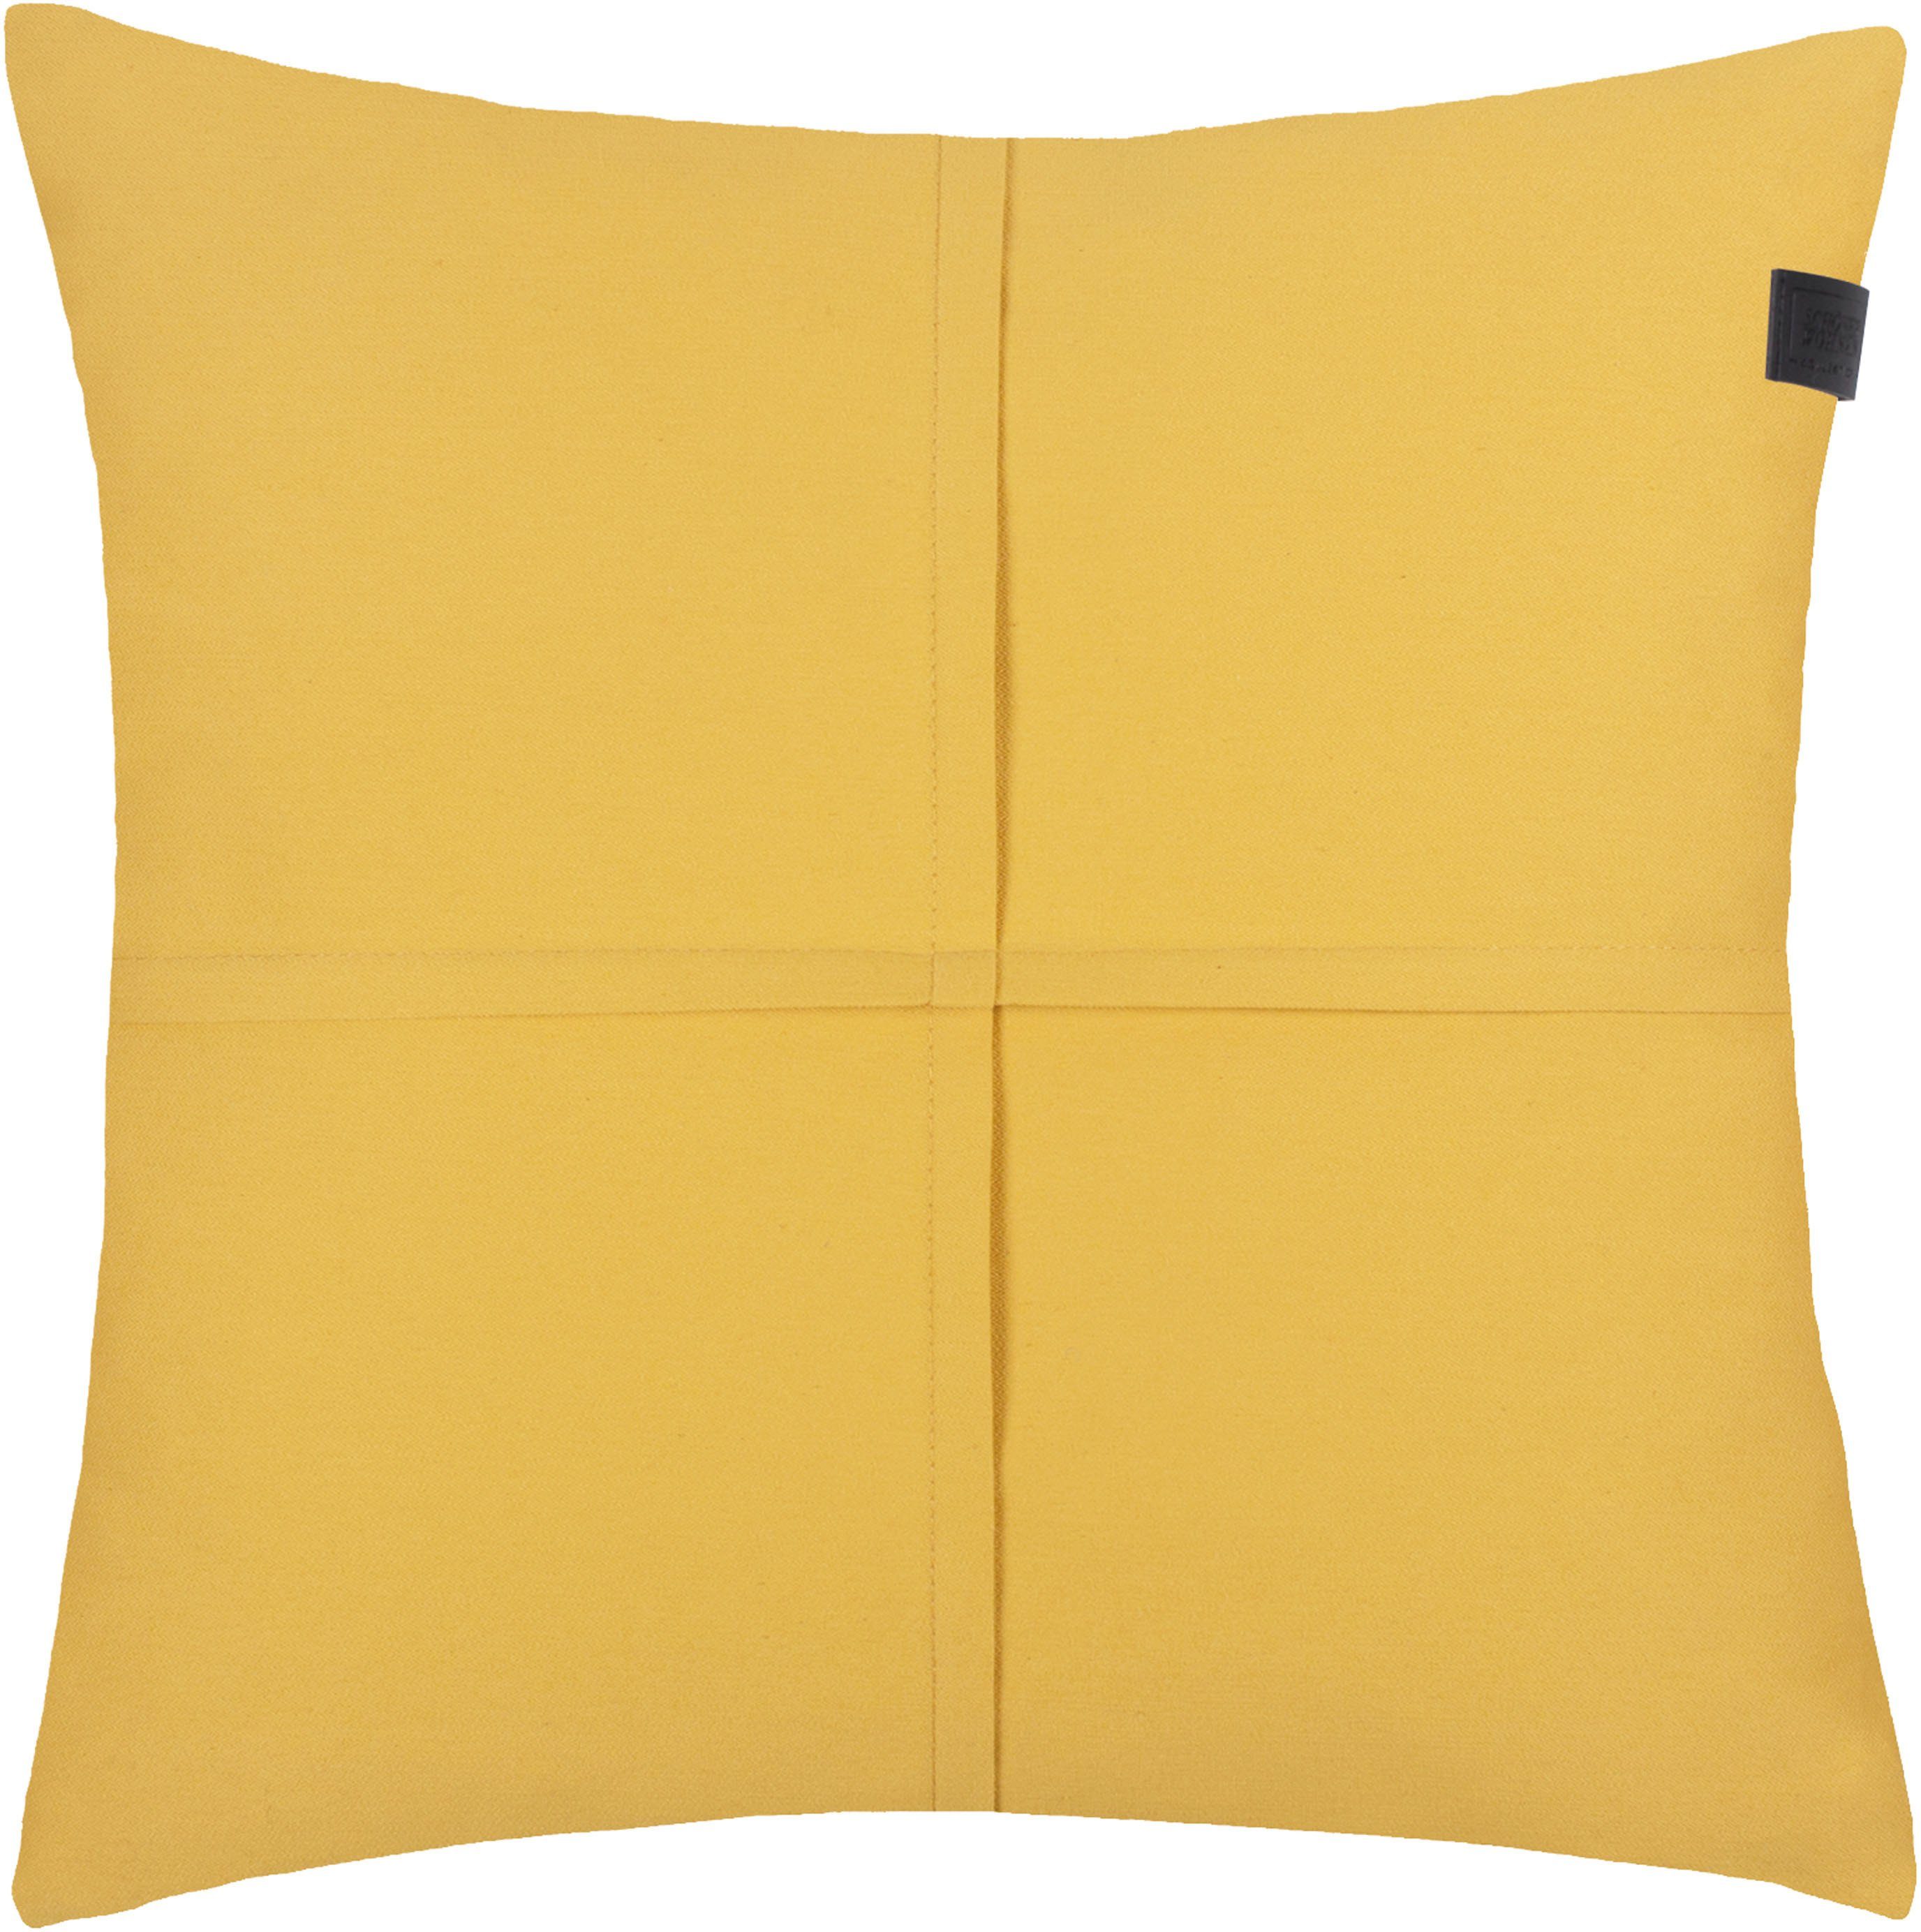 SCHÖNER WOHNEN-Kollektion Dekokissen Soft, 38x38 cm goldfarben